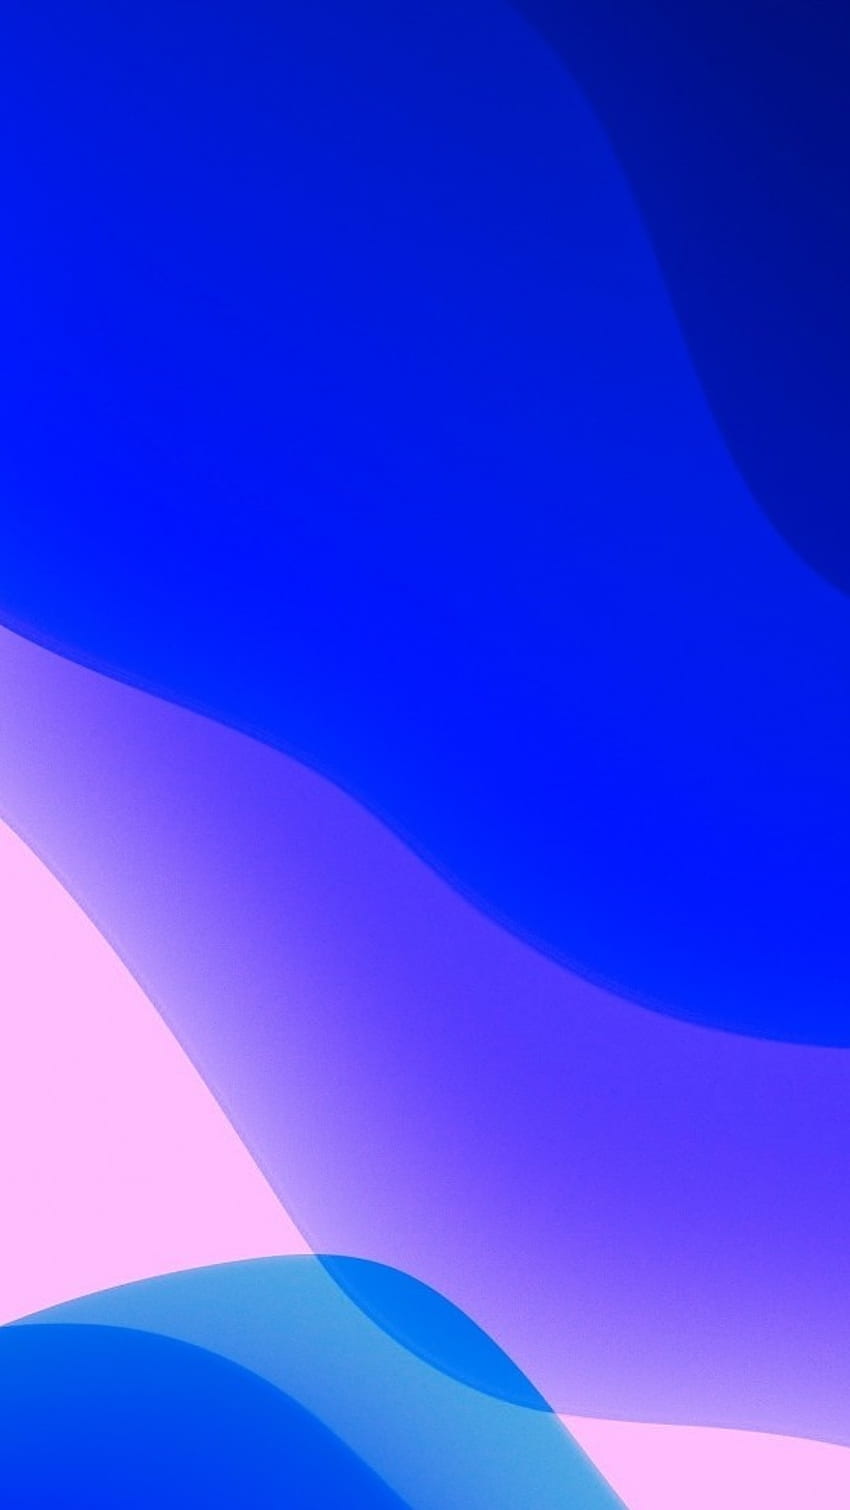 Nếu bạn là fan của iPhone 13 Pro Max màu xanh hay hồng thì đừng bỏ lỡ cơ hội sở hữu những hình nền đẹp tuyệt vời phù hợp với gam màu hiện tại của máy. Thể hiện phong cách độc đáo của bạn trên màn hình với hàng ngàn lựa chọn hình nền độc đáo.